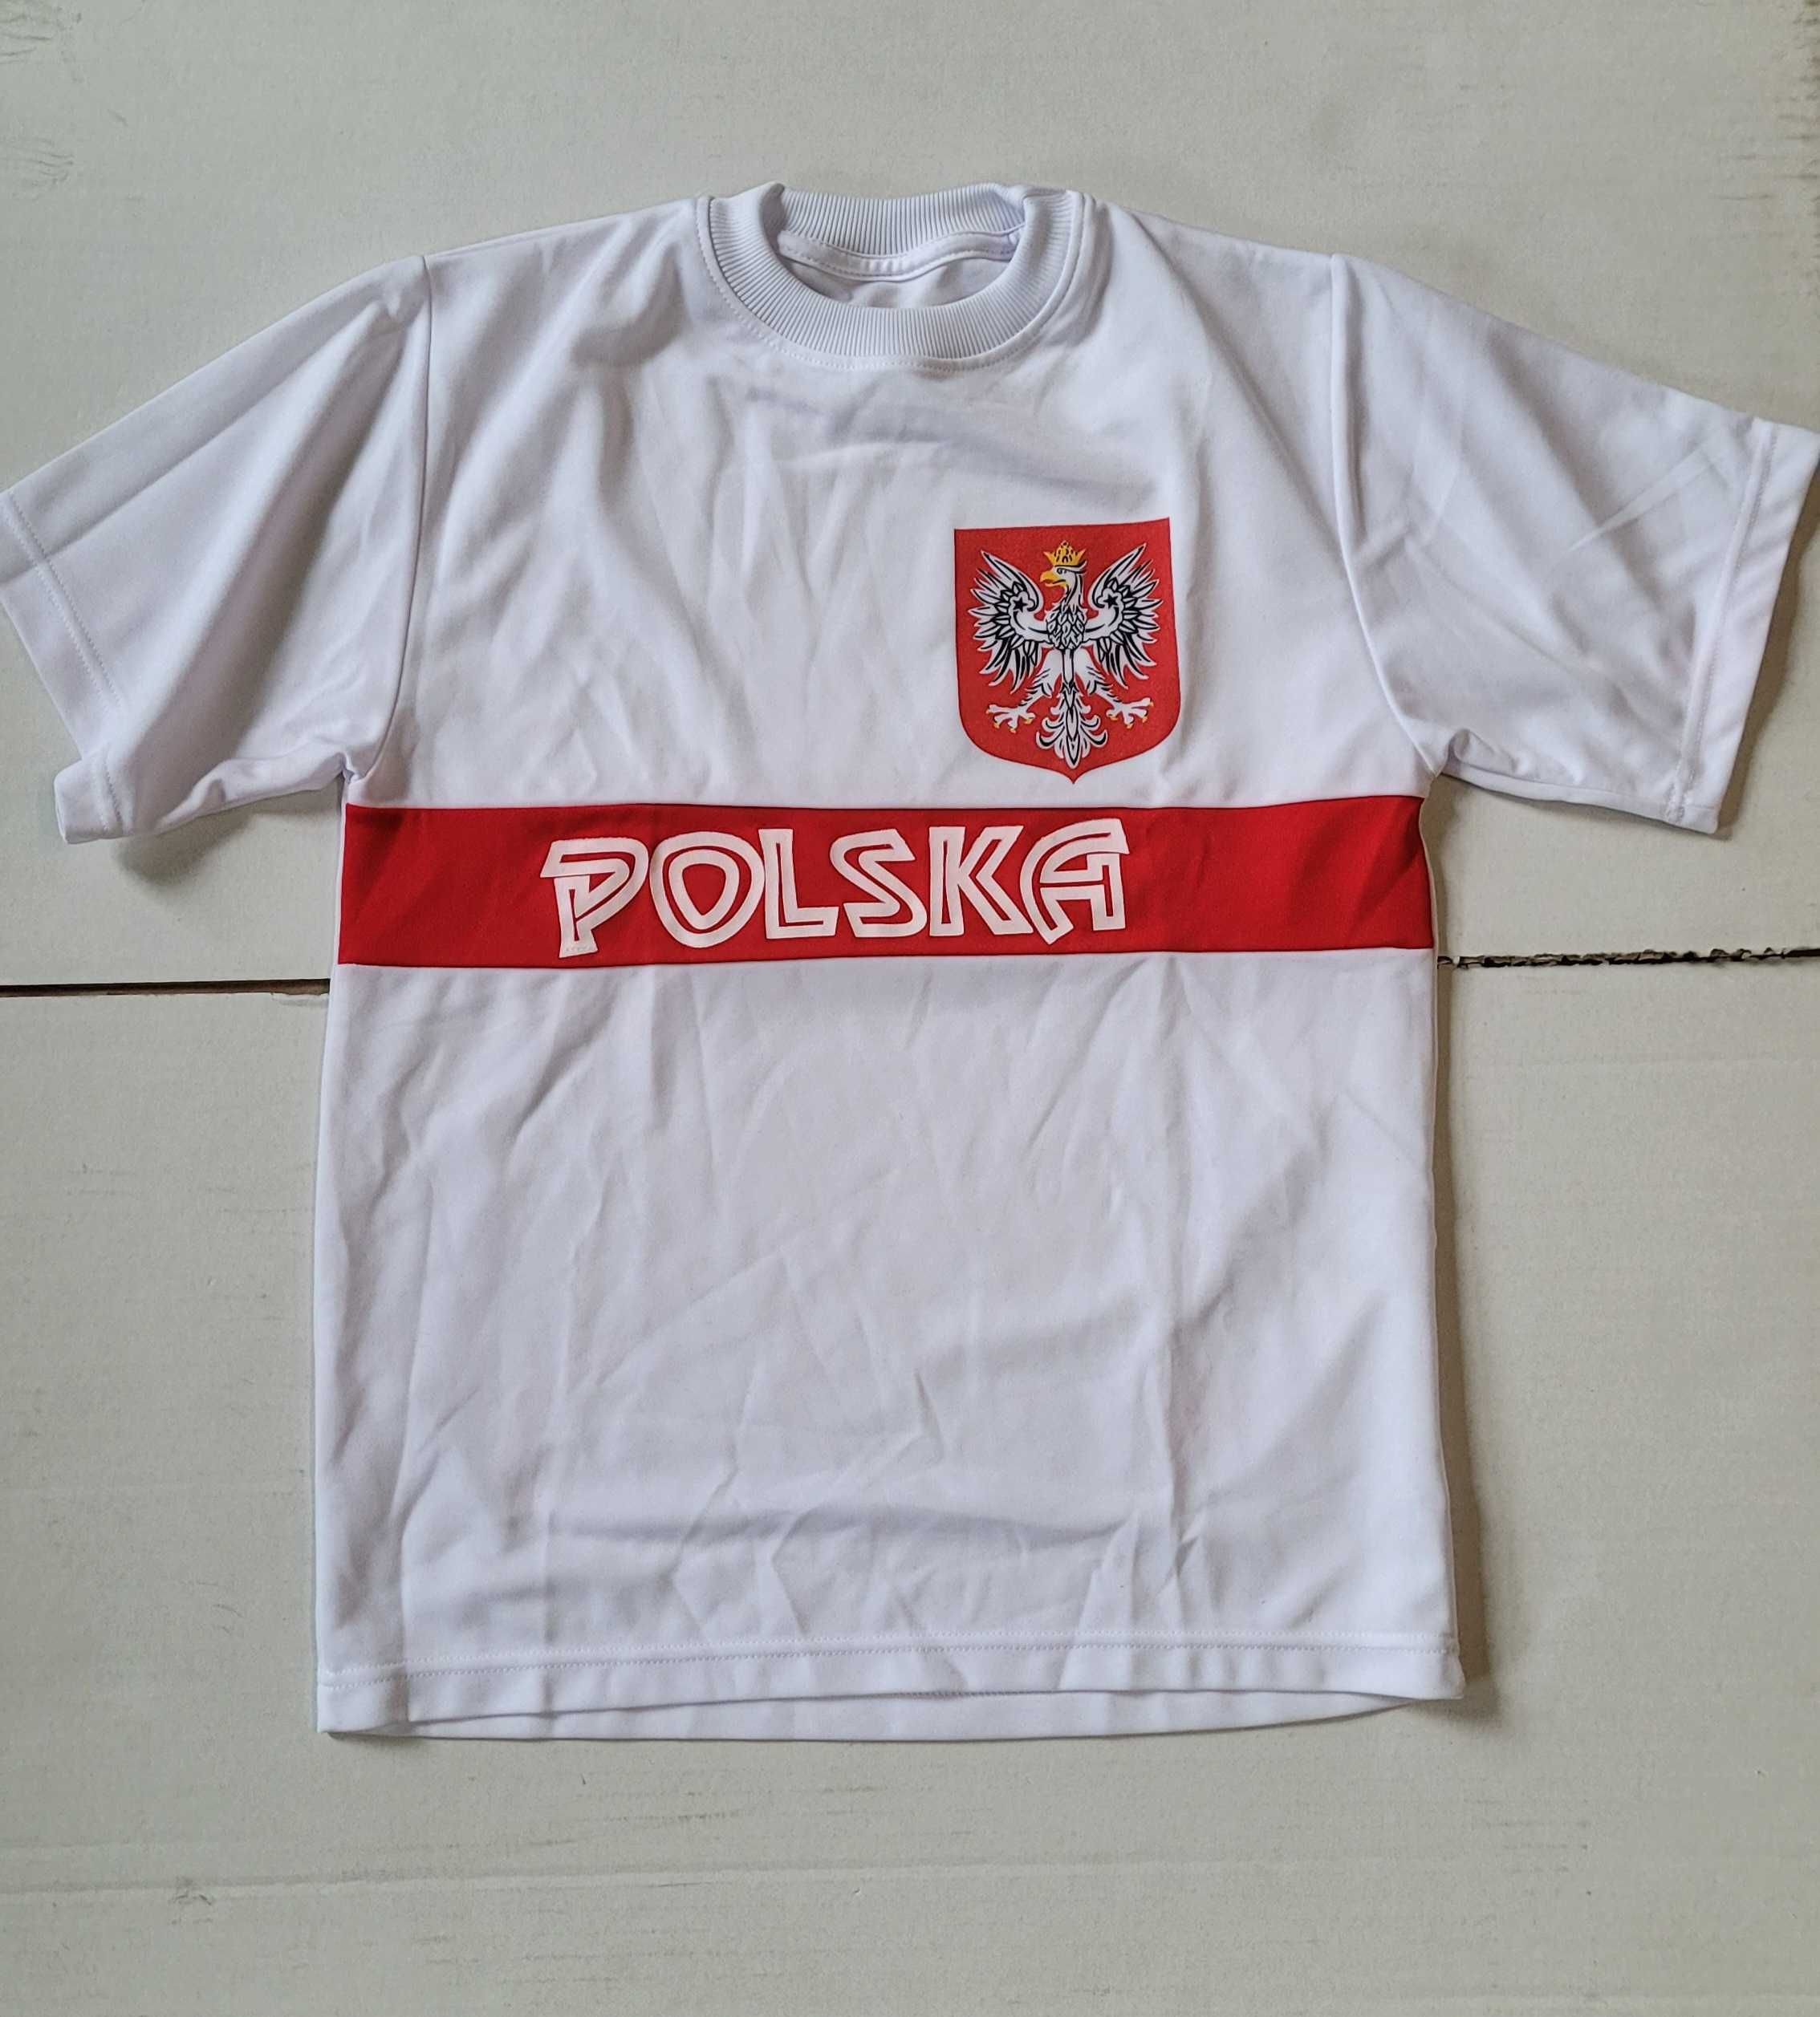 Koszulka kibica Polska/różne modele/różne rozmiary